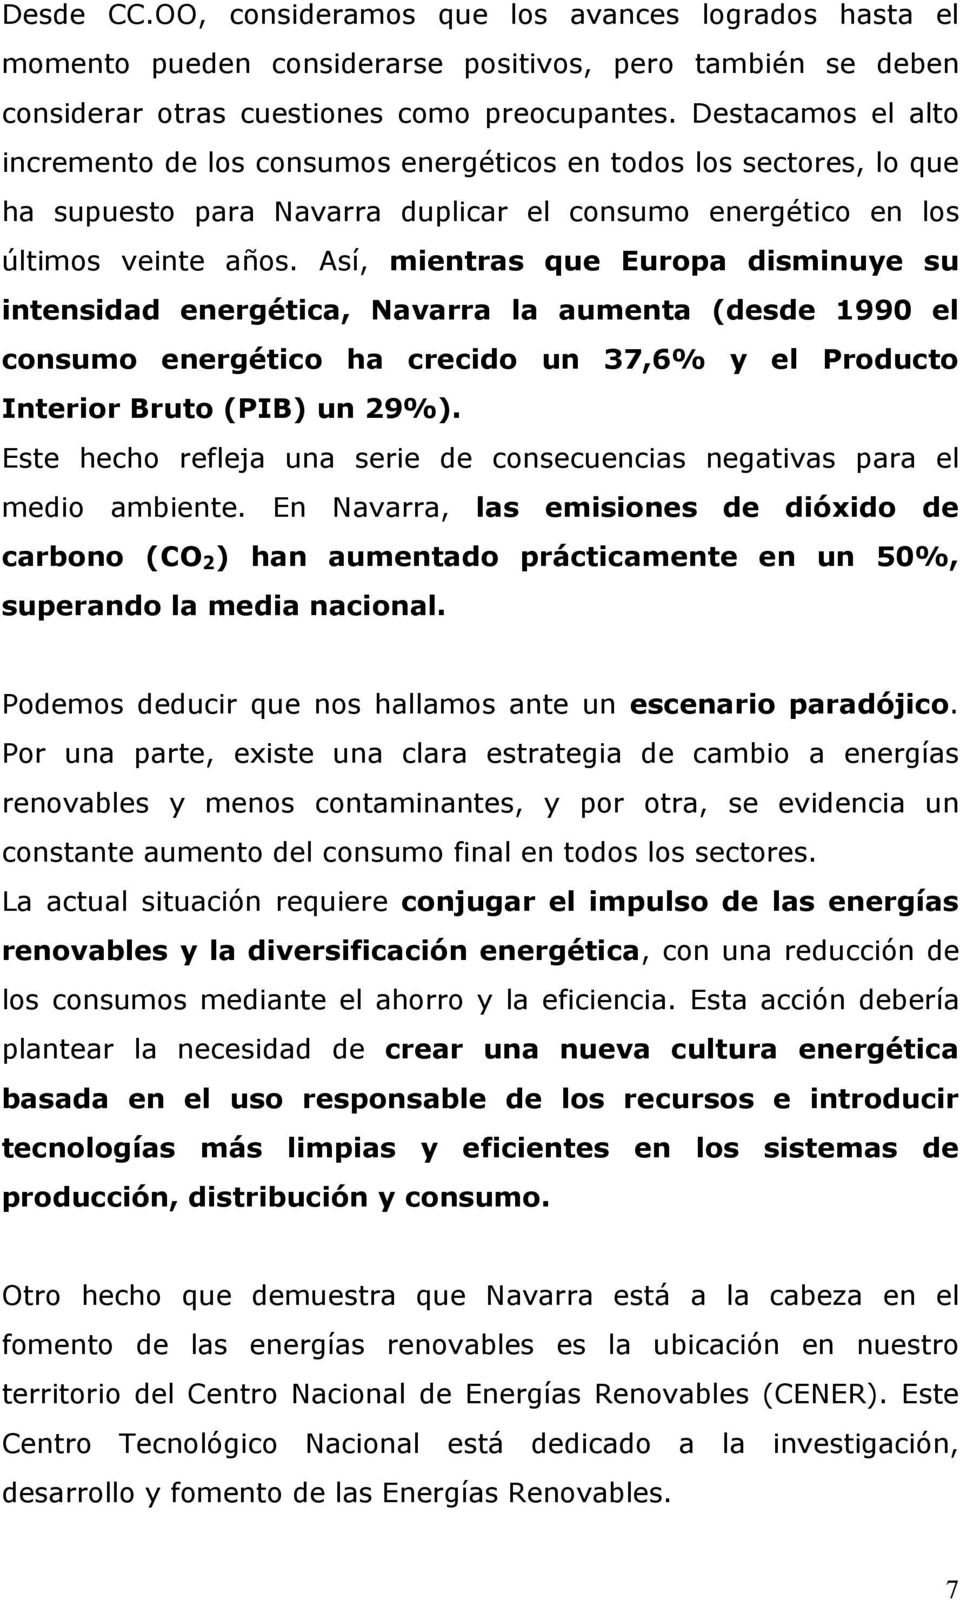 Así, mientras que Europa disminuye su intensidad energética, Navarra la aumenta (desde 1990 el consumo energético ha crecido un 37,6% y el Producto Interior Bruto (PIB) un 29%).